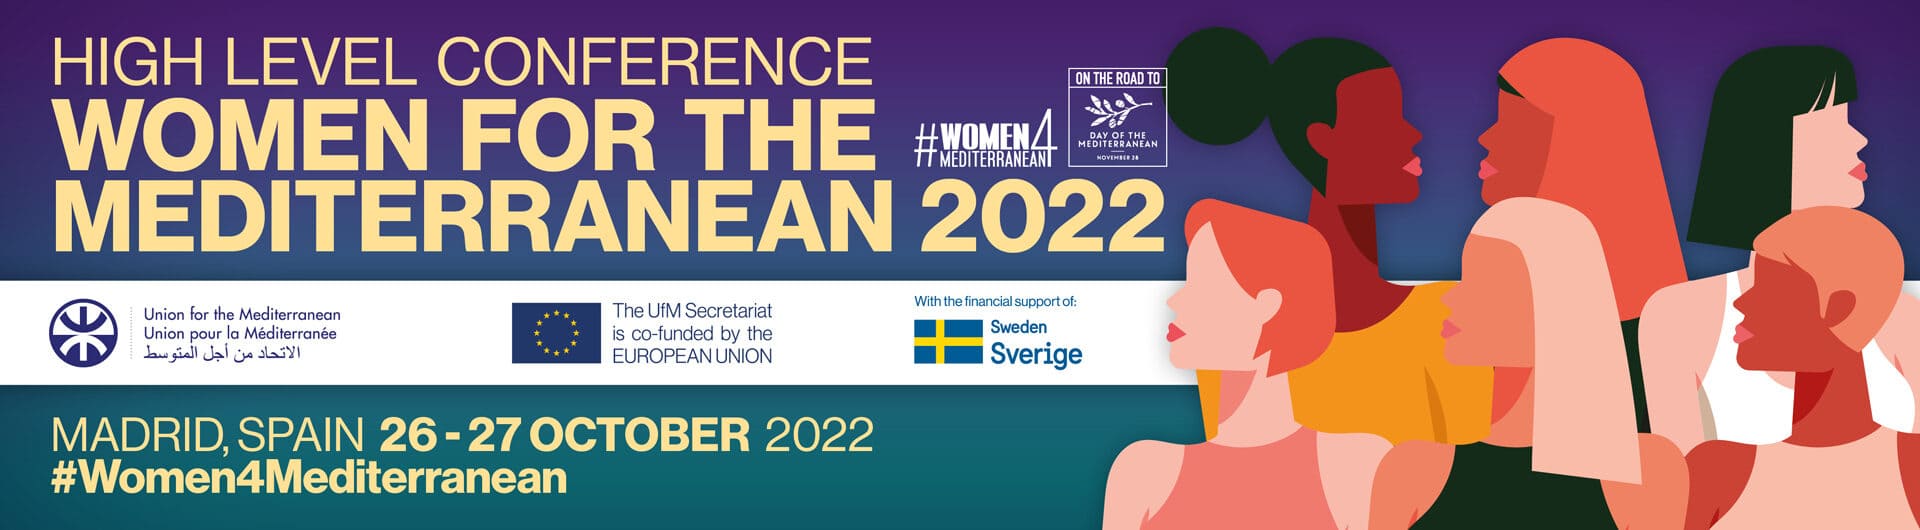 Cártel Conferencia de Alto Nivel: Mujeres por el Mediterráneo 2022